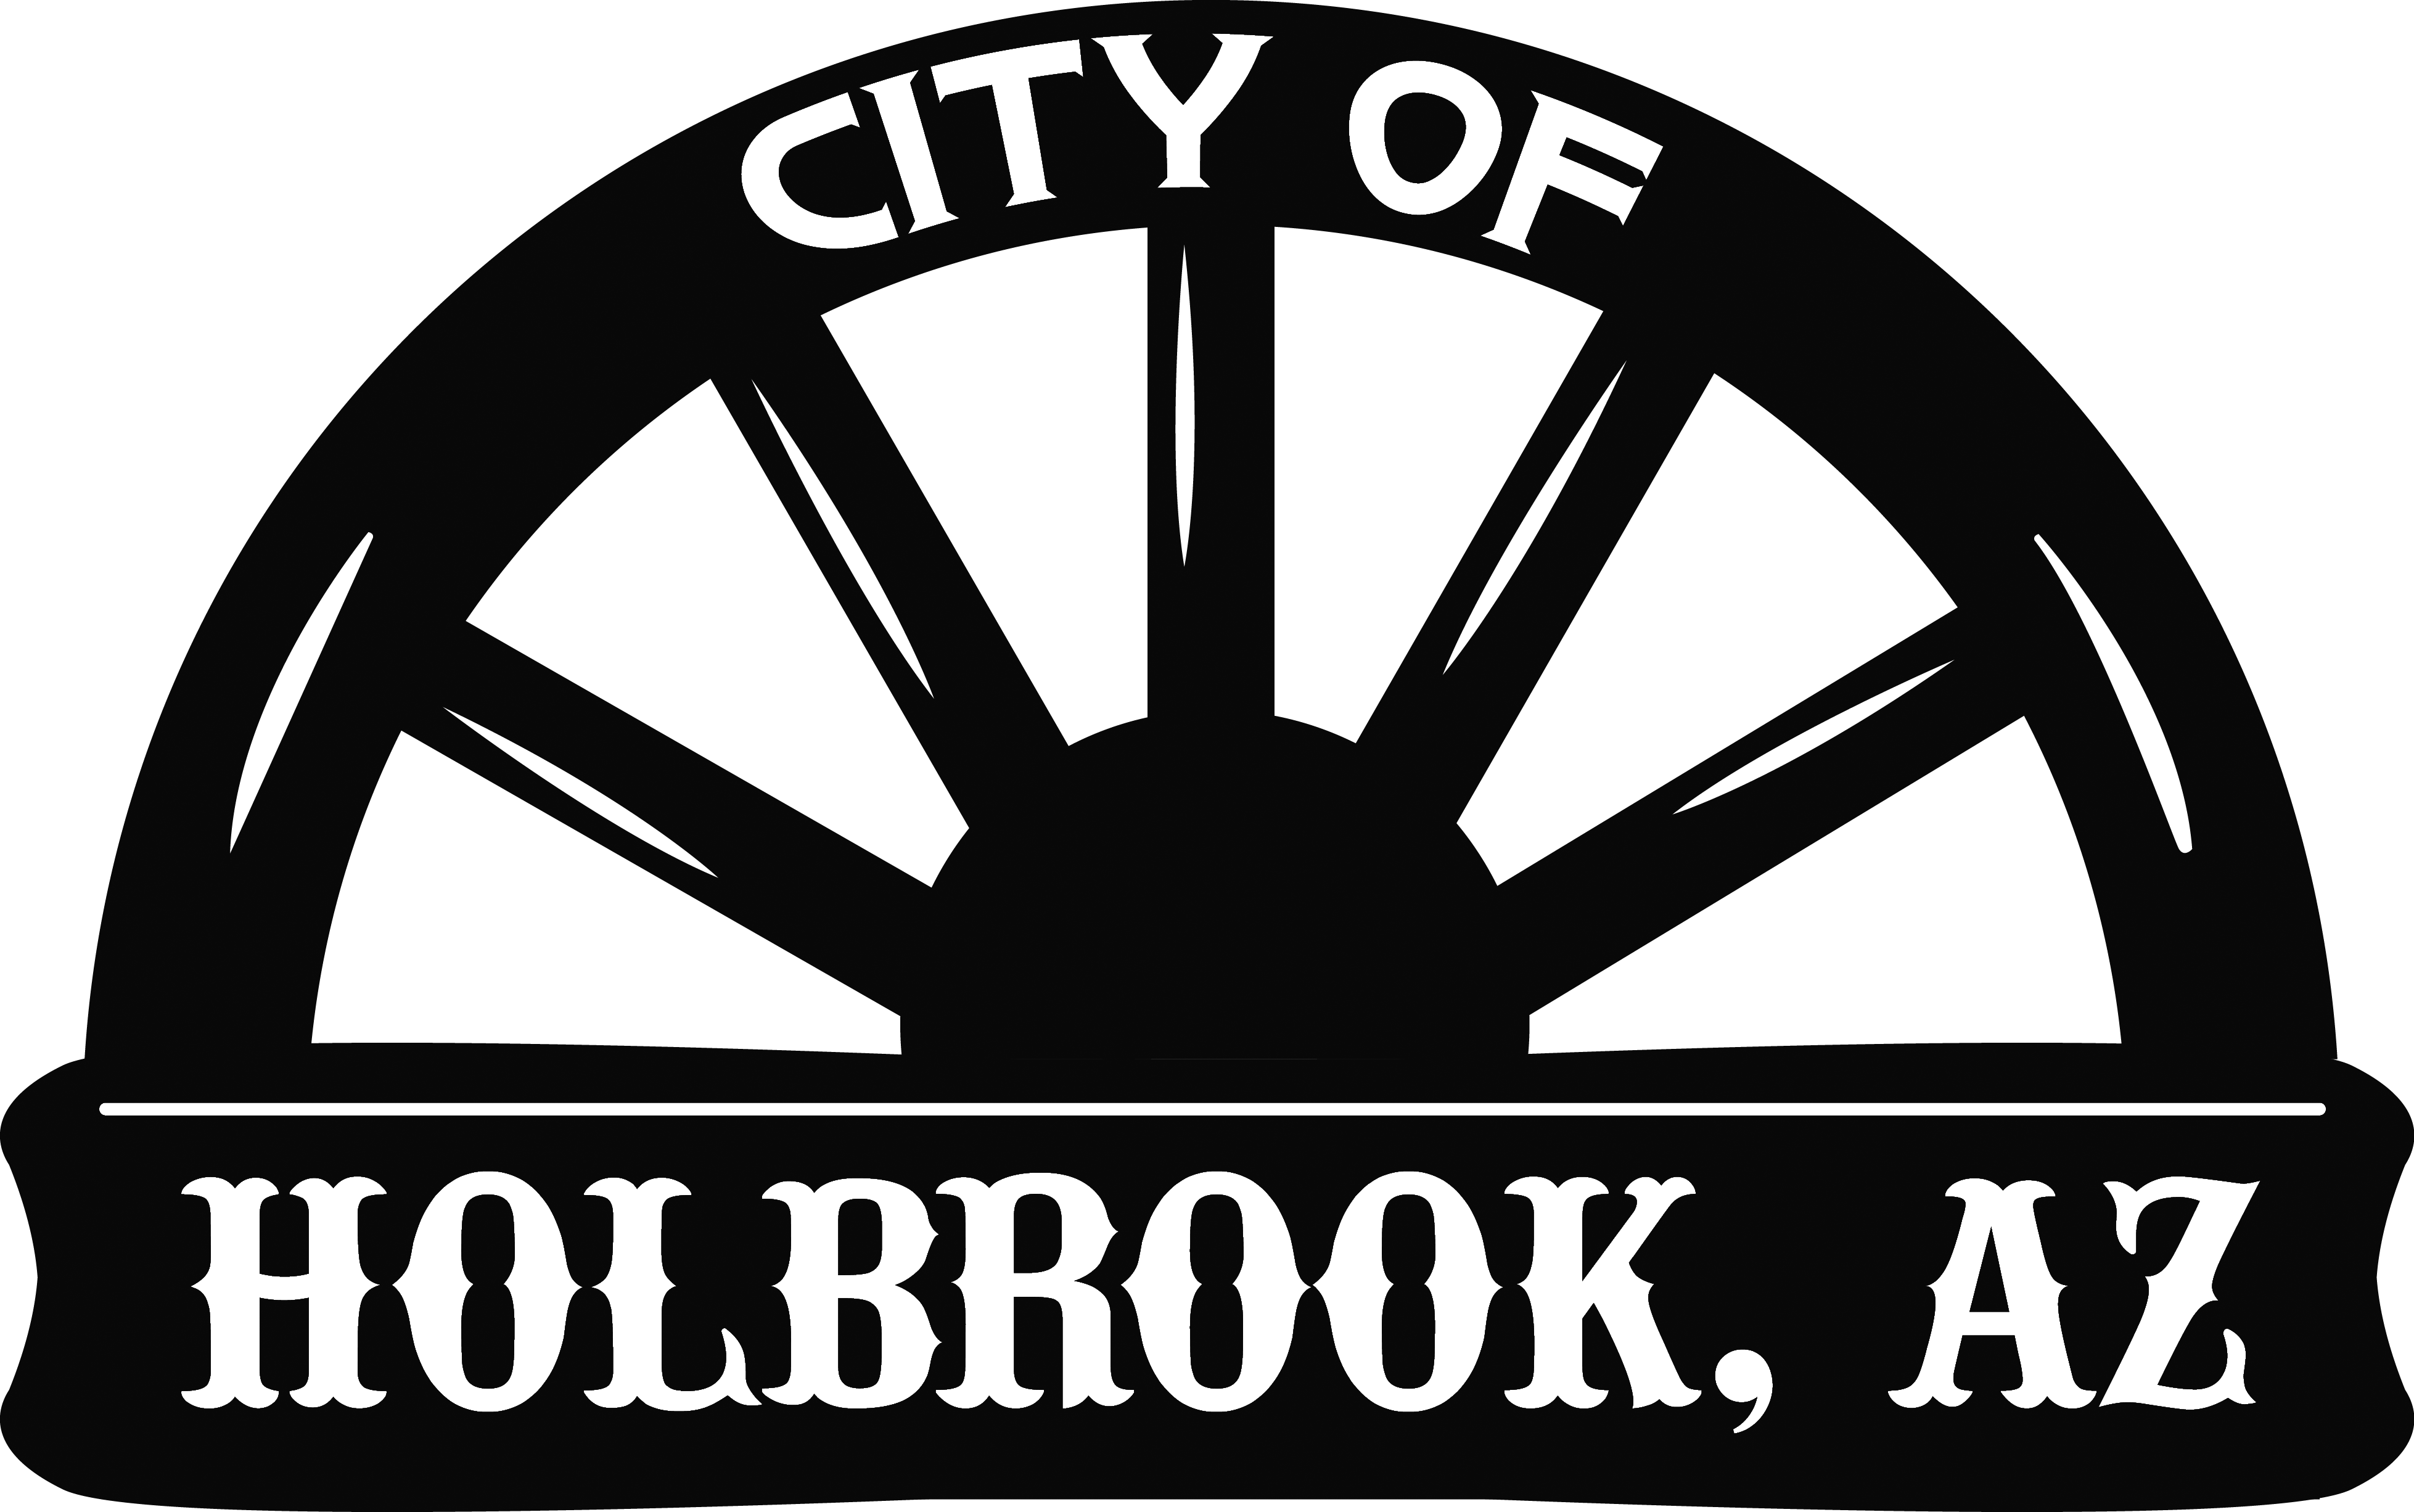 City Of Holbrook Logo - Civic Fk2 Mugen Wheels (3915x2452), Png Download